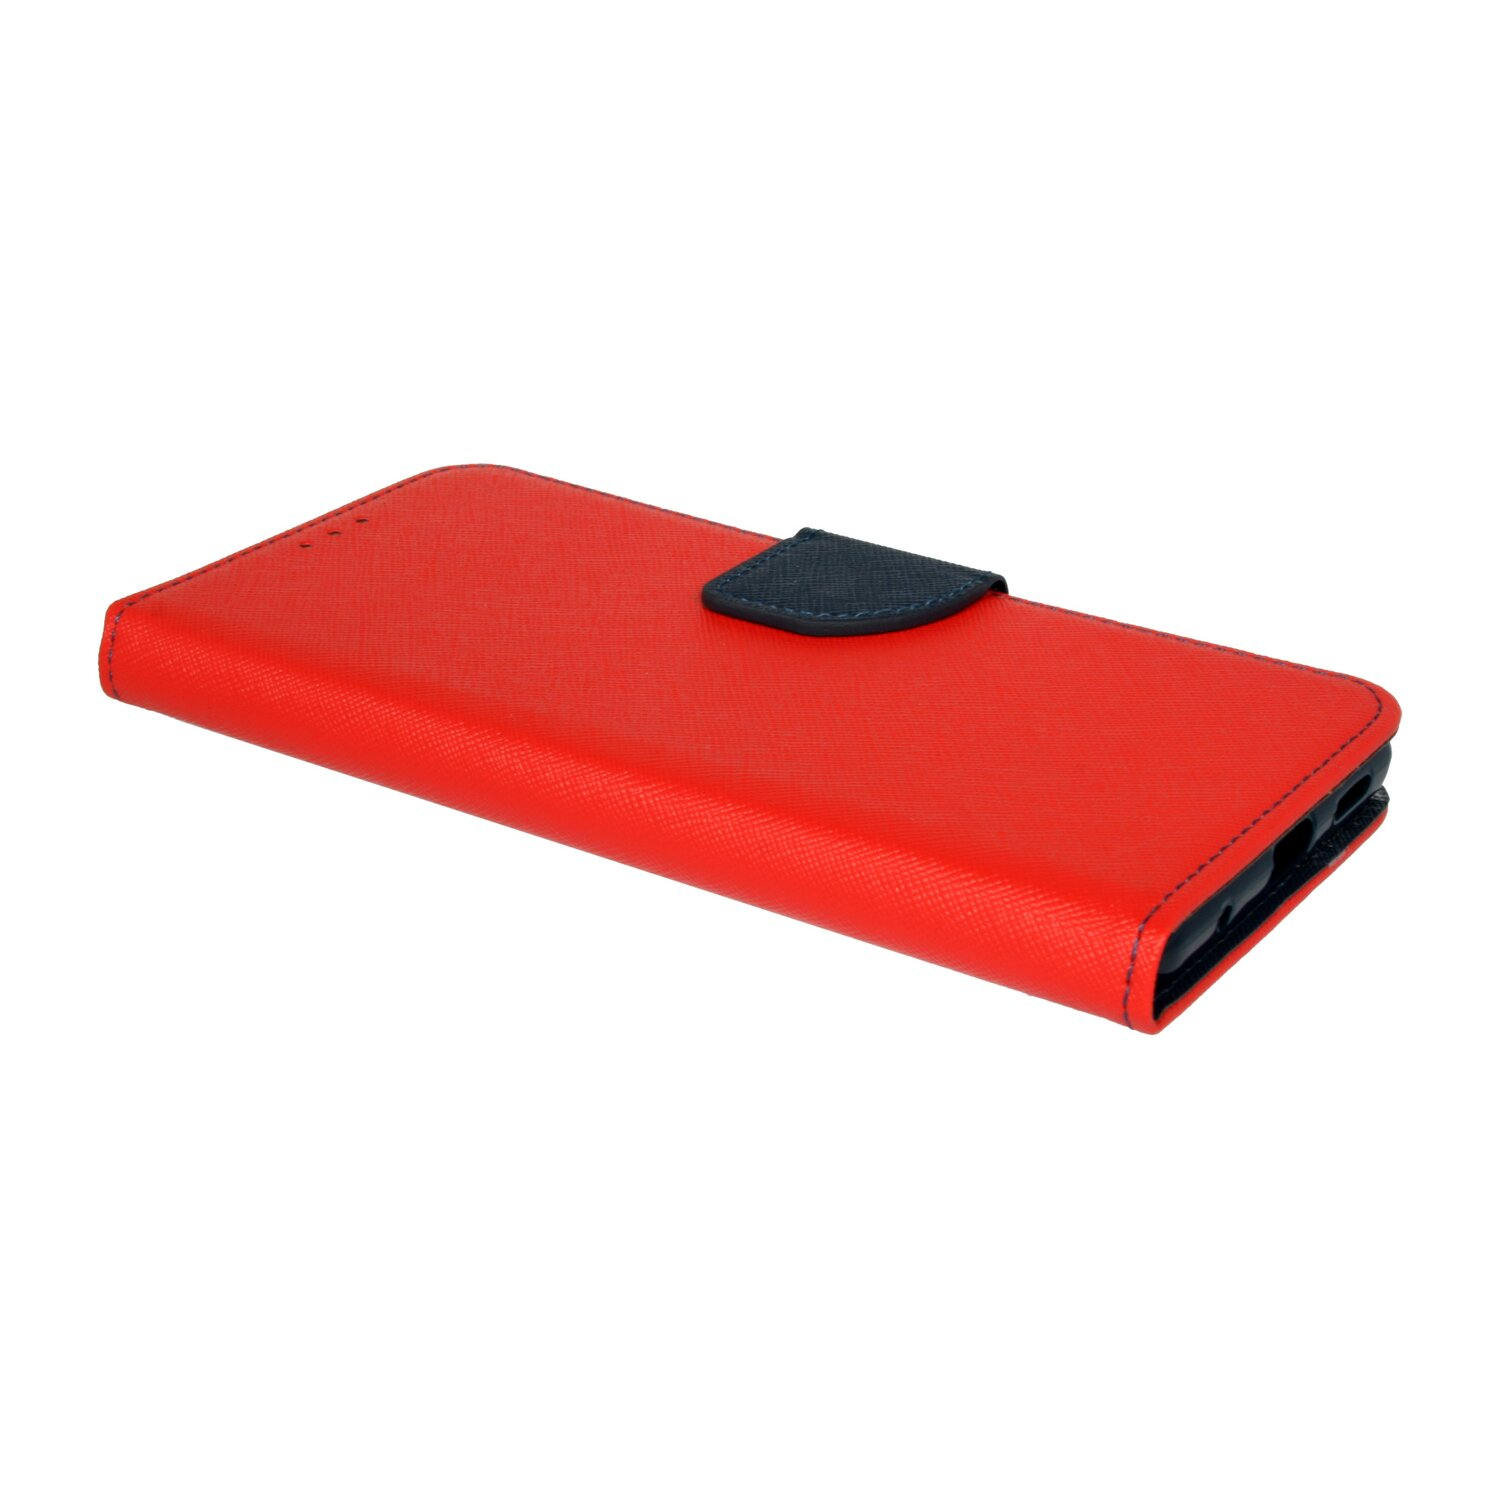 COFI Buch Tasche, Bookcover, Rot-Blau Pro, 10 Redmi Note Xiaomi